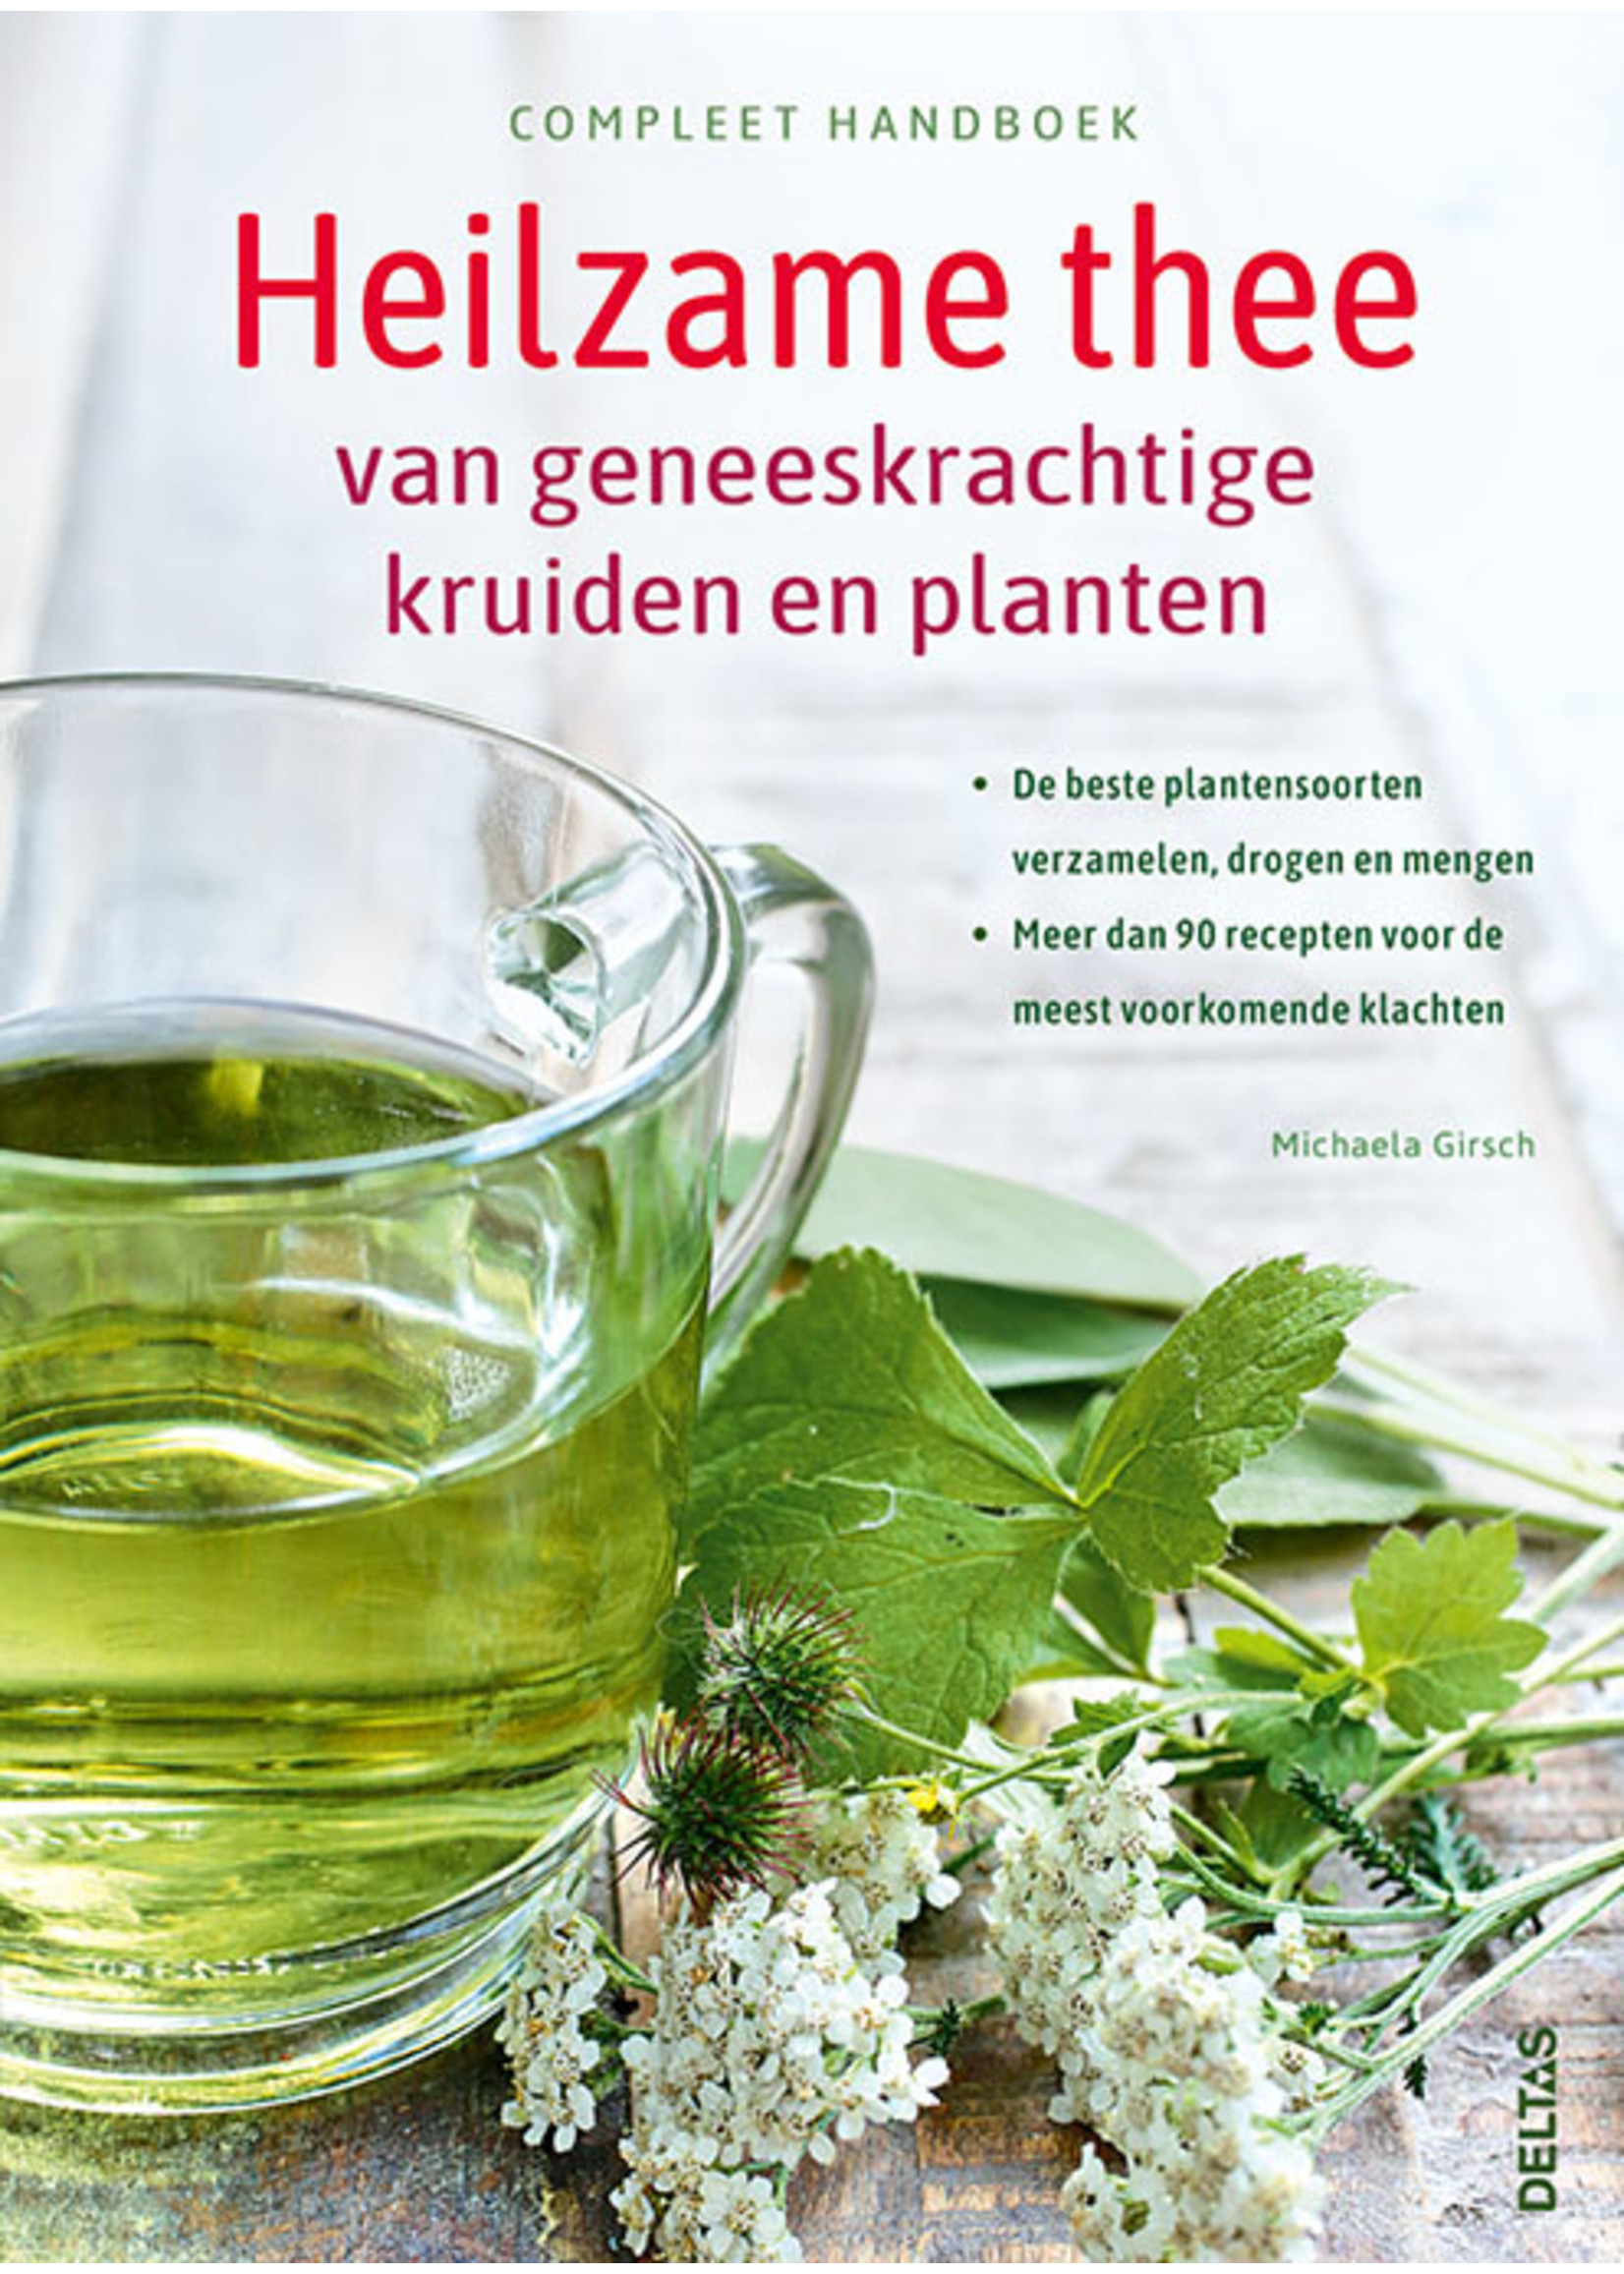 Boek; Compleet handboek Heilzame thee van geneeskrachtige kruiden en planten - Michaela GIRSCH